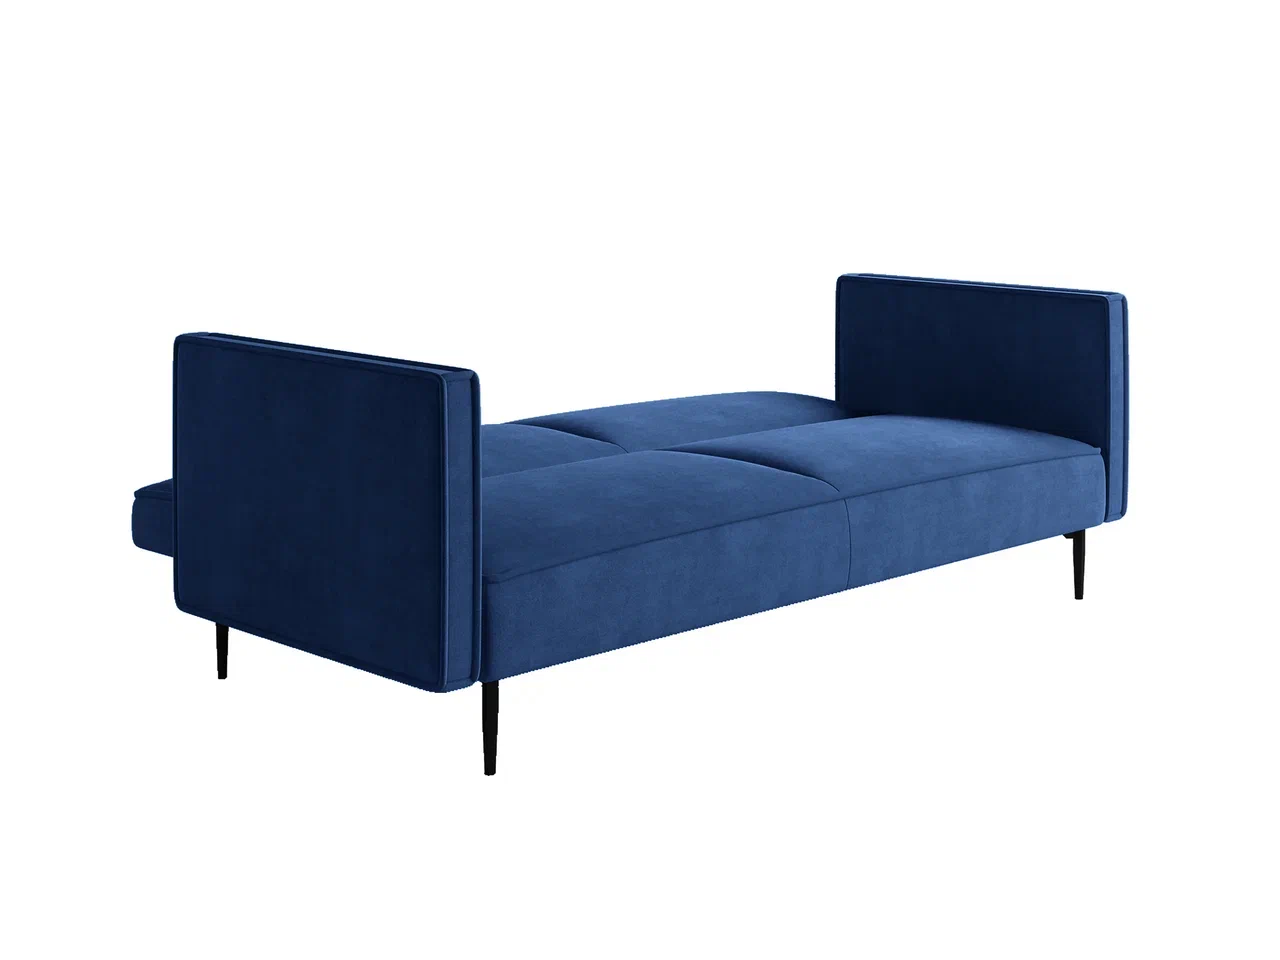 Este диван-кровать трехместный, прямой, с подлокотниками, бархат синий 29